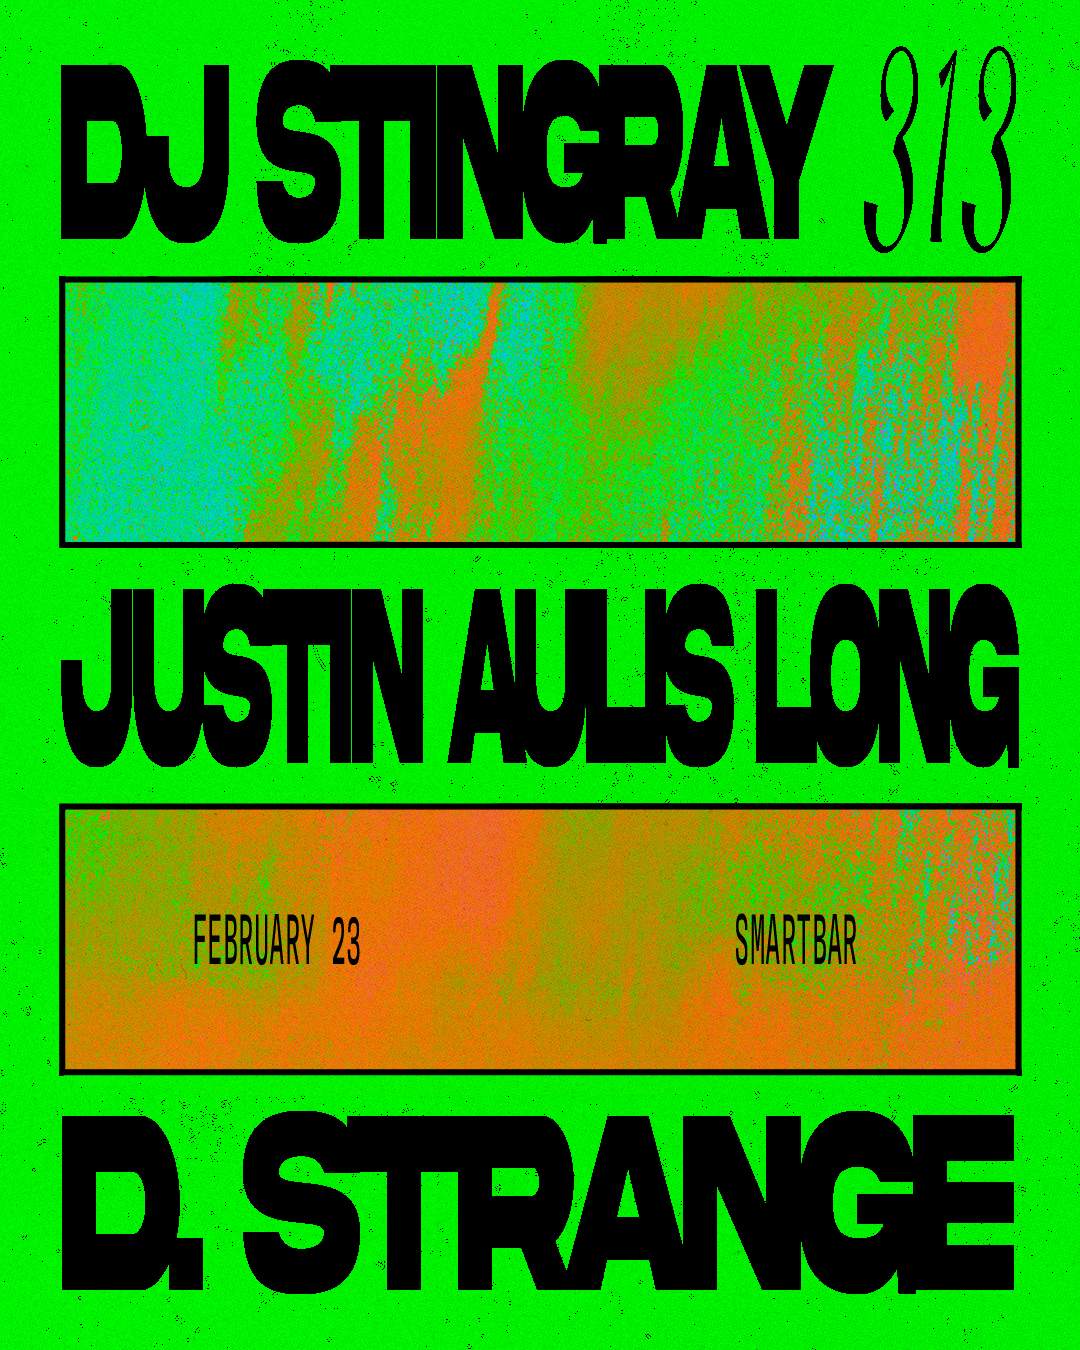 DJ Stingray 313 - Justin Aulis Long - D. Strange - フライヤー表